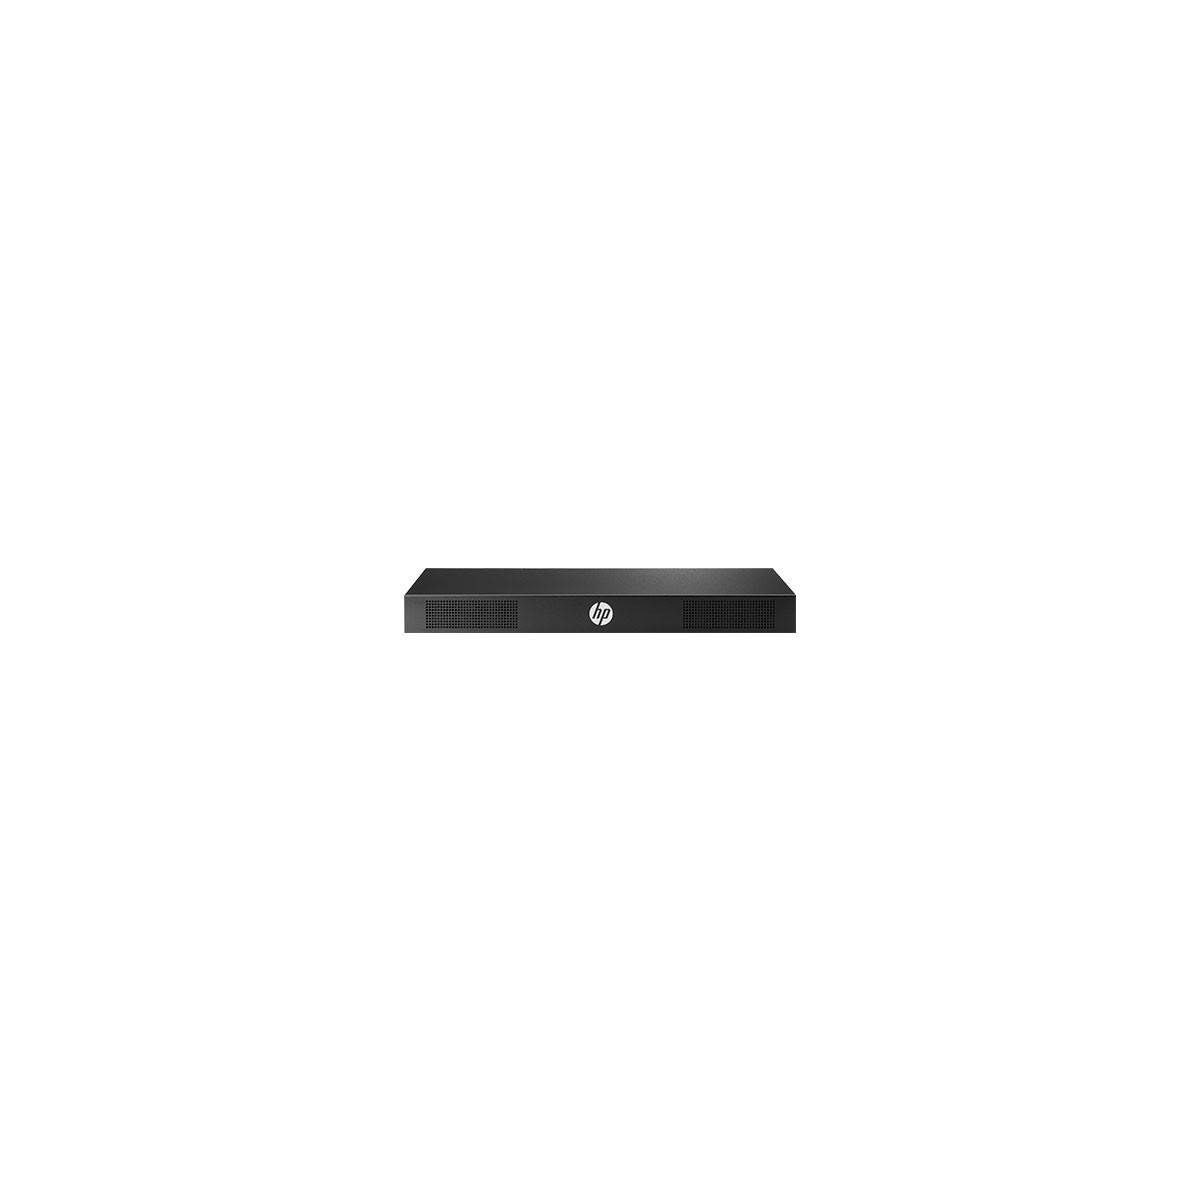 HPE AF651A - Black 16-port Kvm Switch - USB RJ-45, VGA